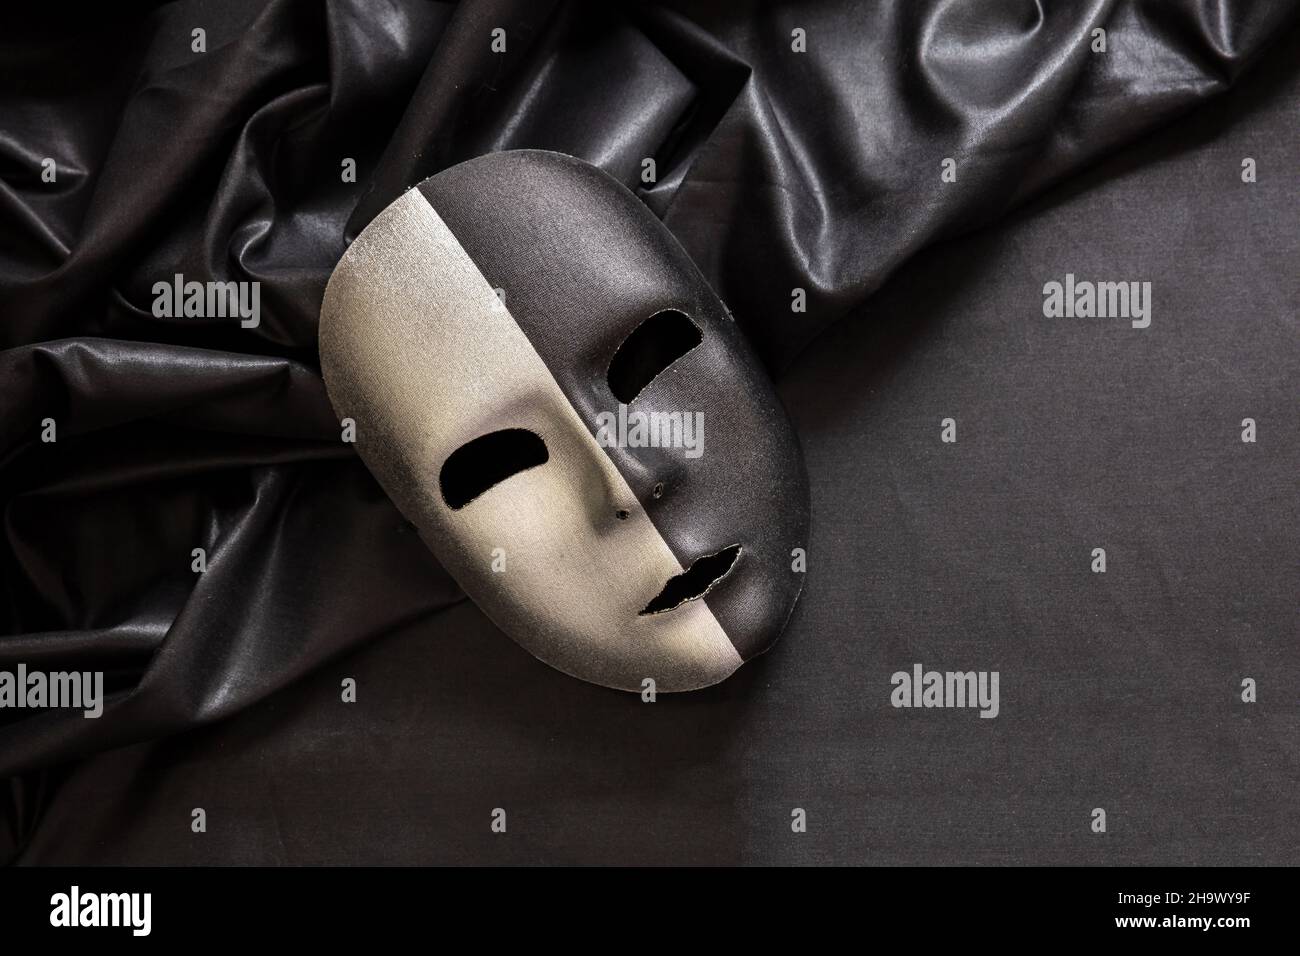 Karneval Venezianische Maske mit zwei Seiten, halb schwarz halb Silber auf welligen dunklen Satin-Textil-Hintergrund. Traditionelle Festival Verkleidung, Mardi Gras Event Maske Stockfoto